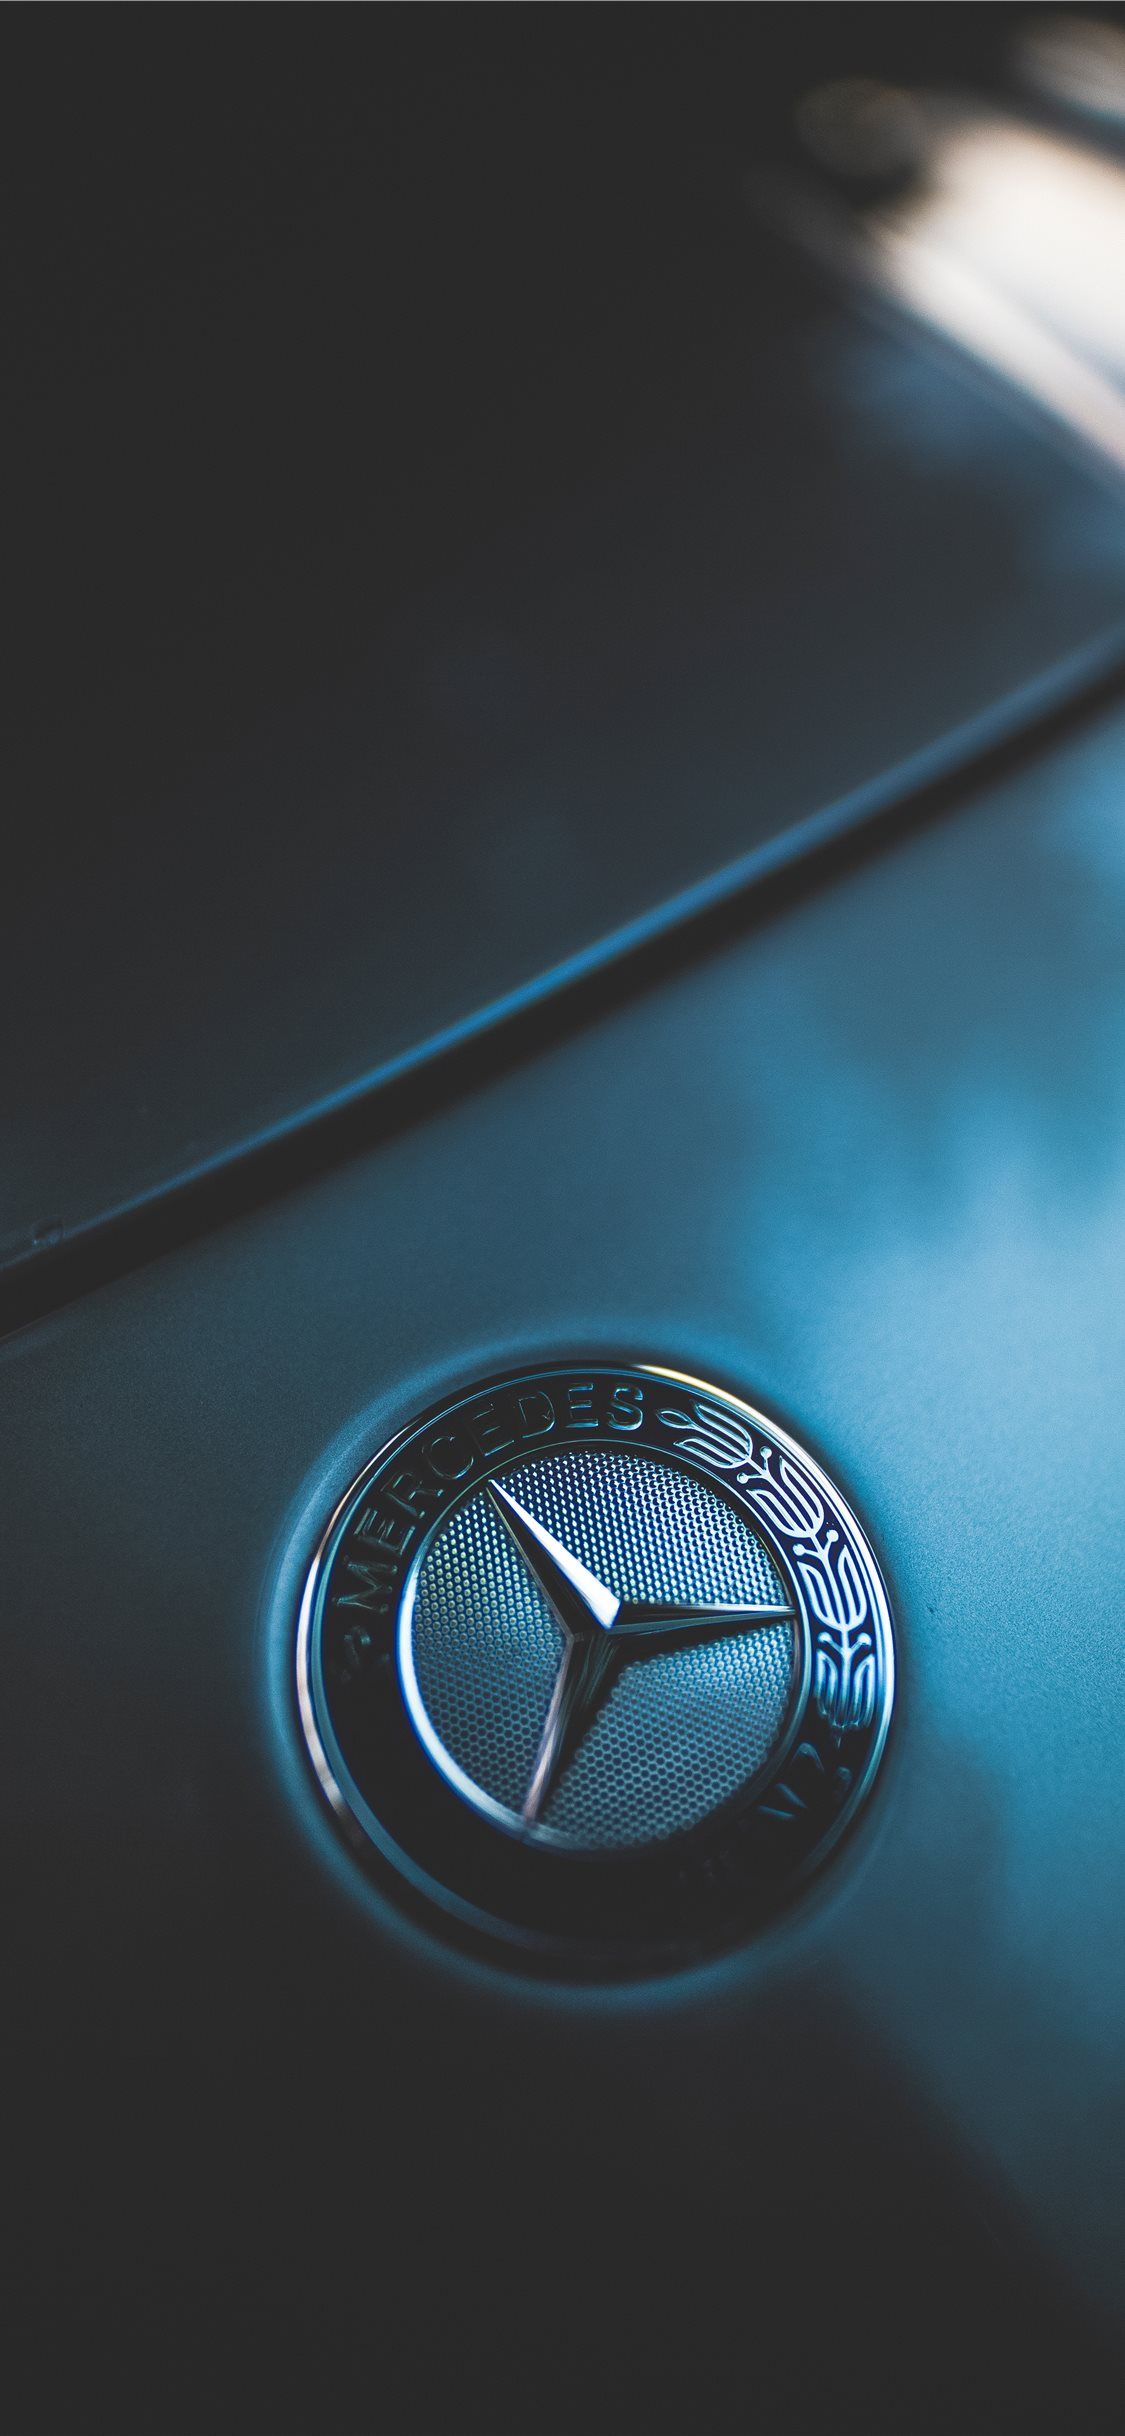 closeup photo of Mercedes Benz emblem iPhone X Wallpaper Free Download